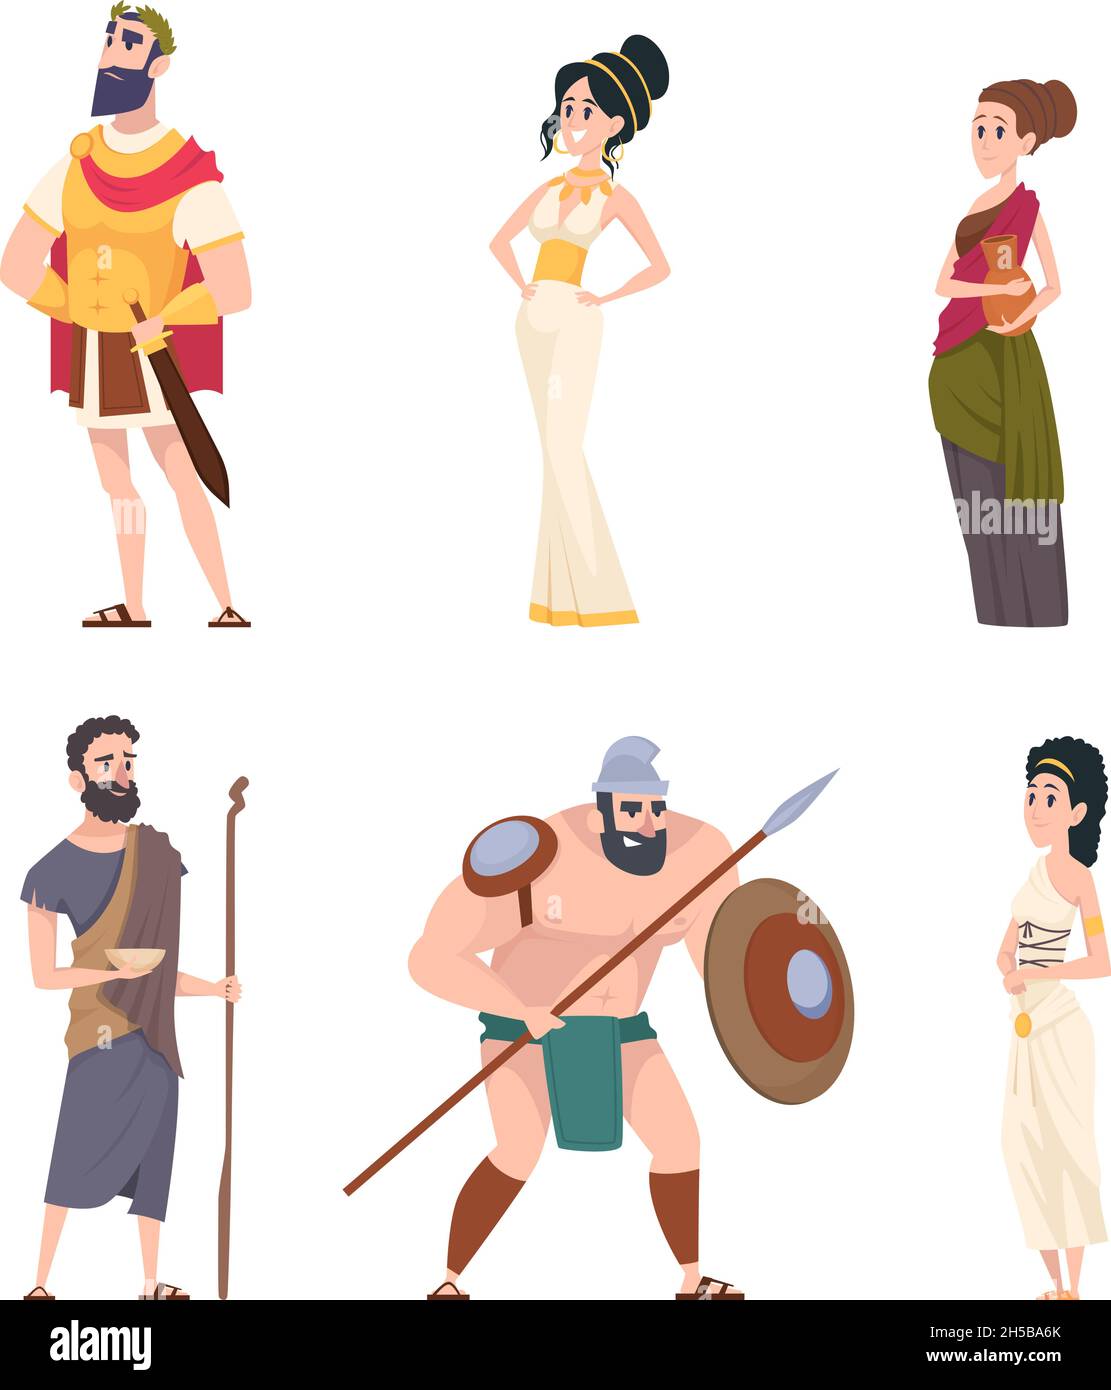 Alte römische Charaktere. Coliseum Gladiator Krieger mit Waffe Bürger Männer traditionelle kulturelle Personen genaue Vektor Menschen Stock Vektor